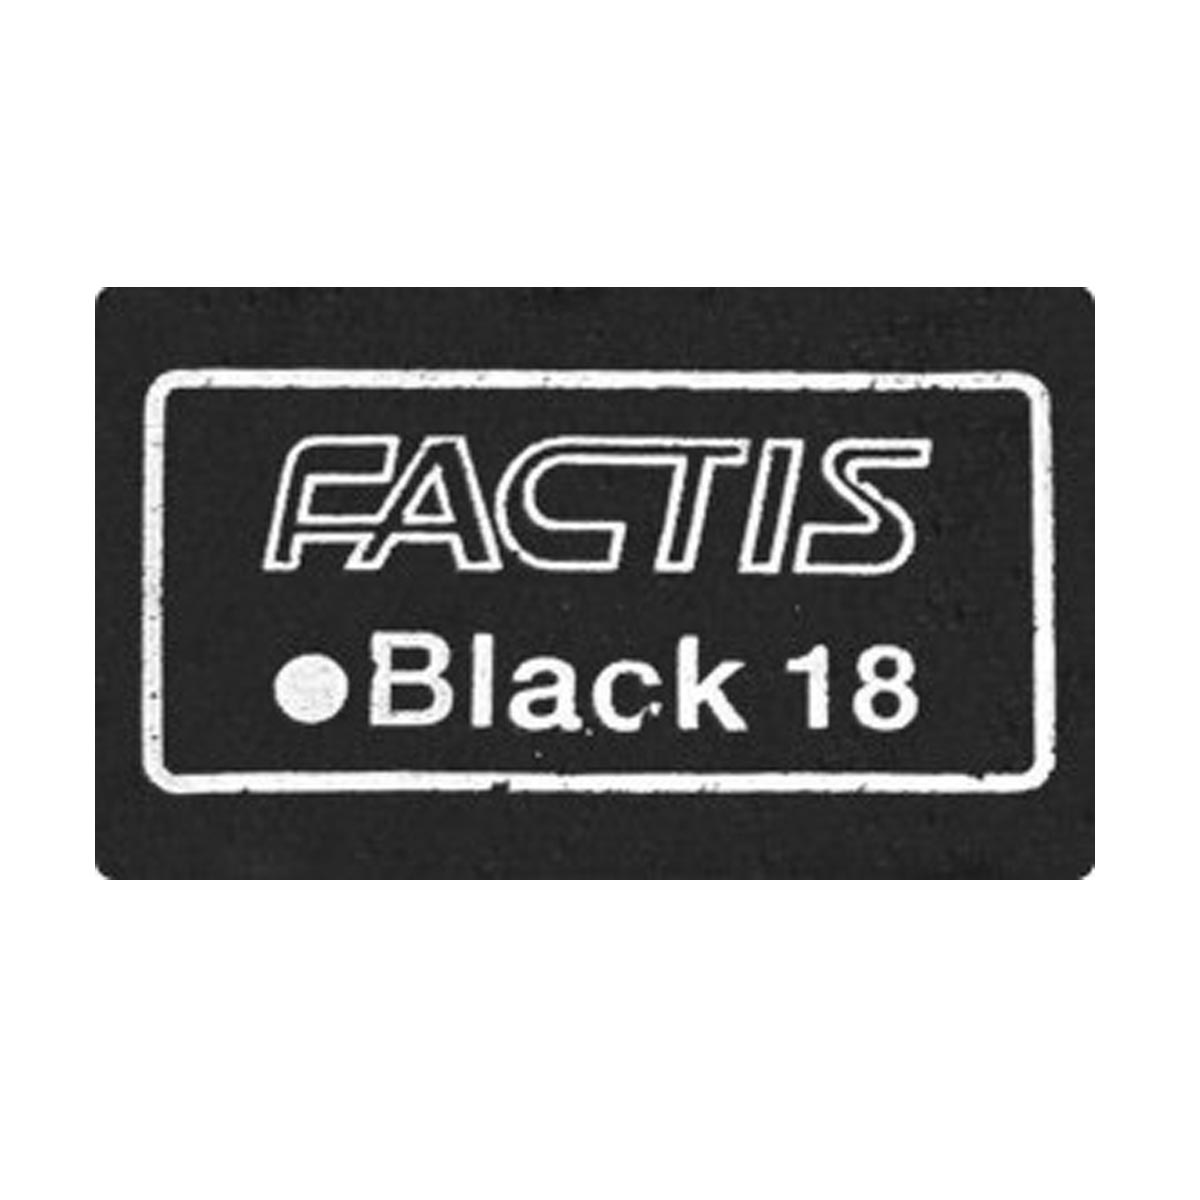 General's Factis Magic Black Eraser